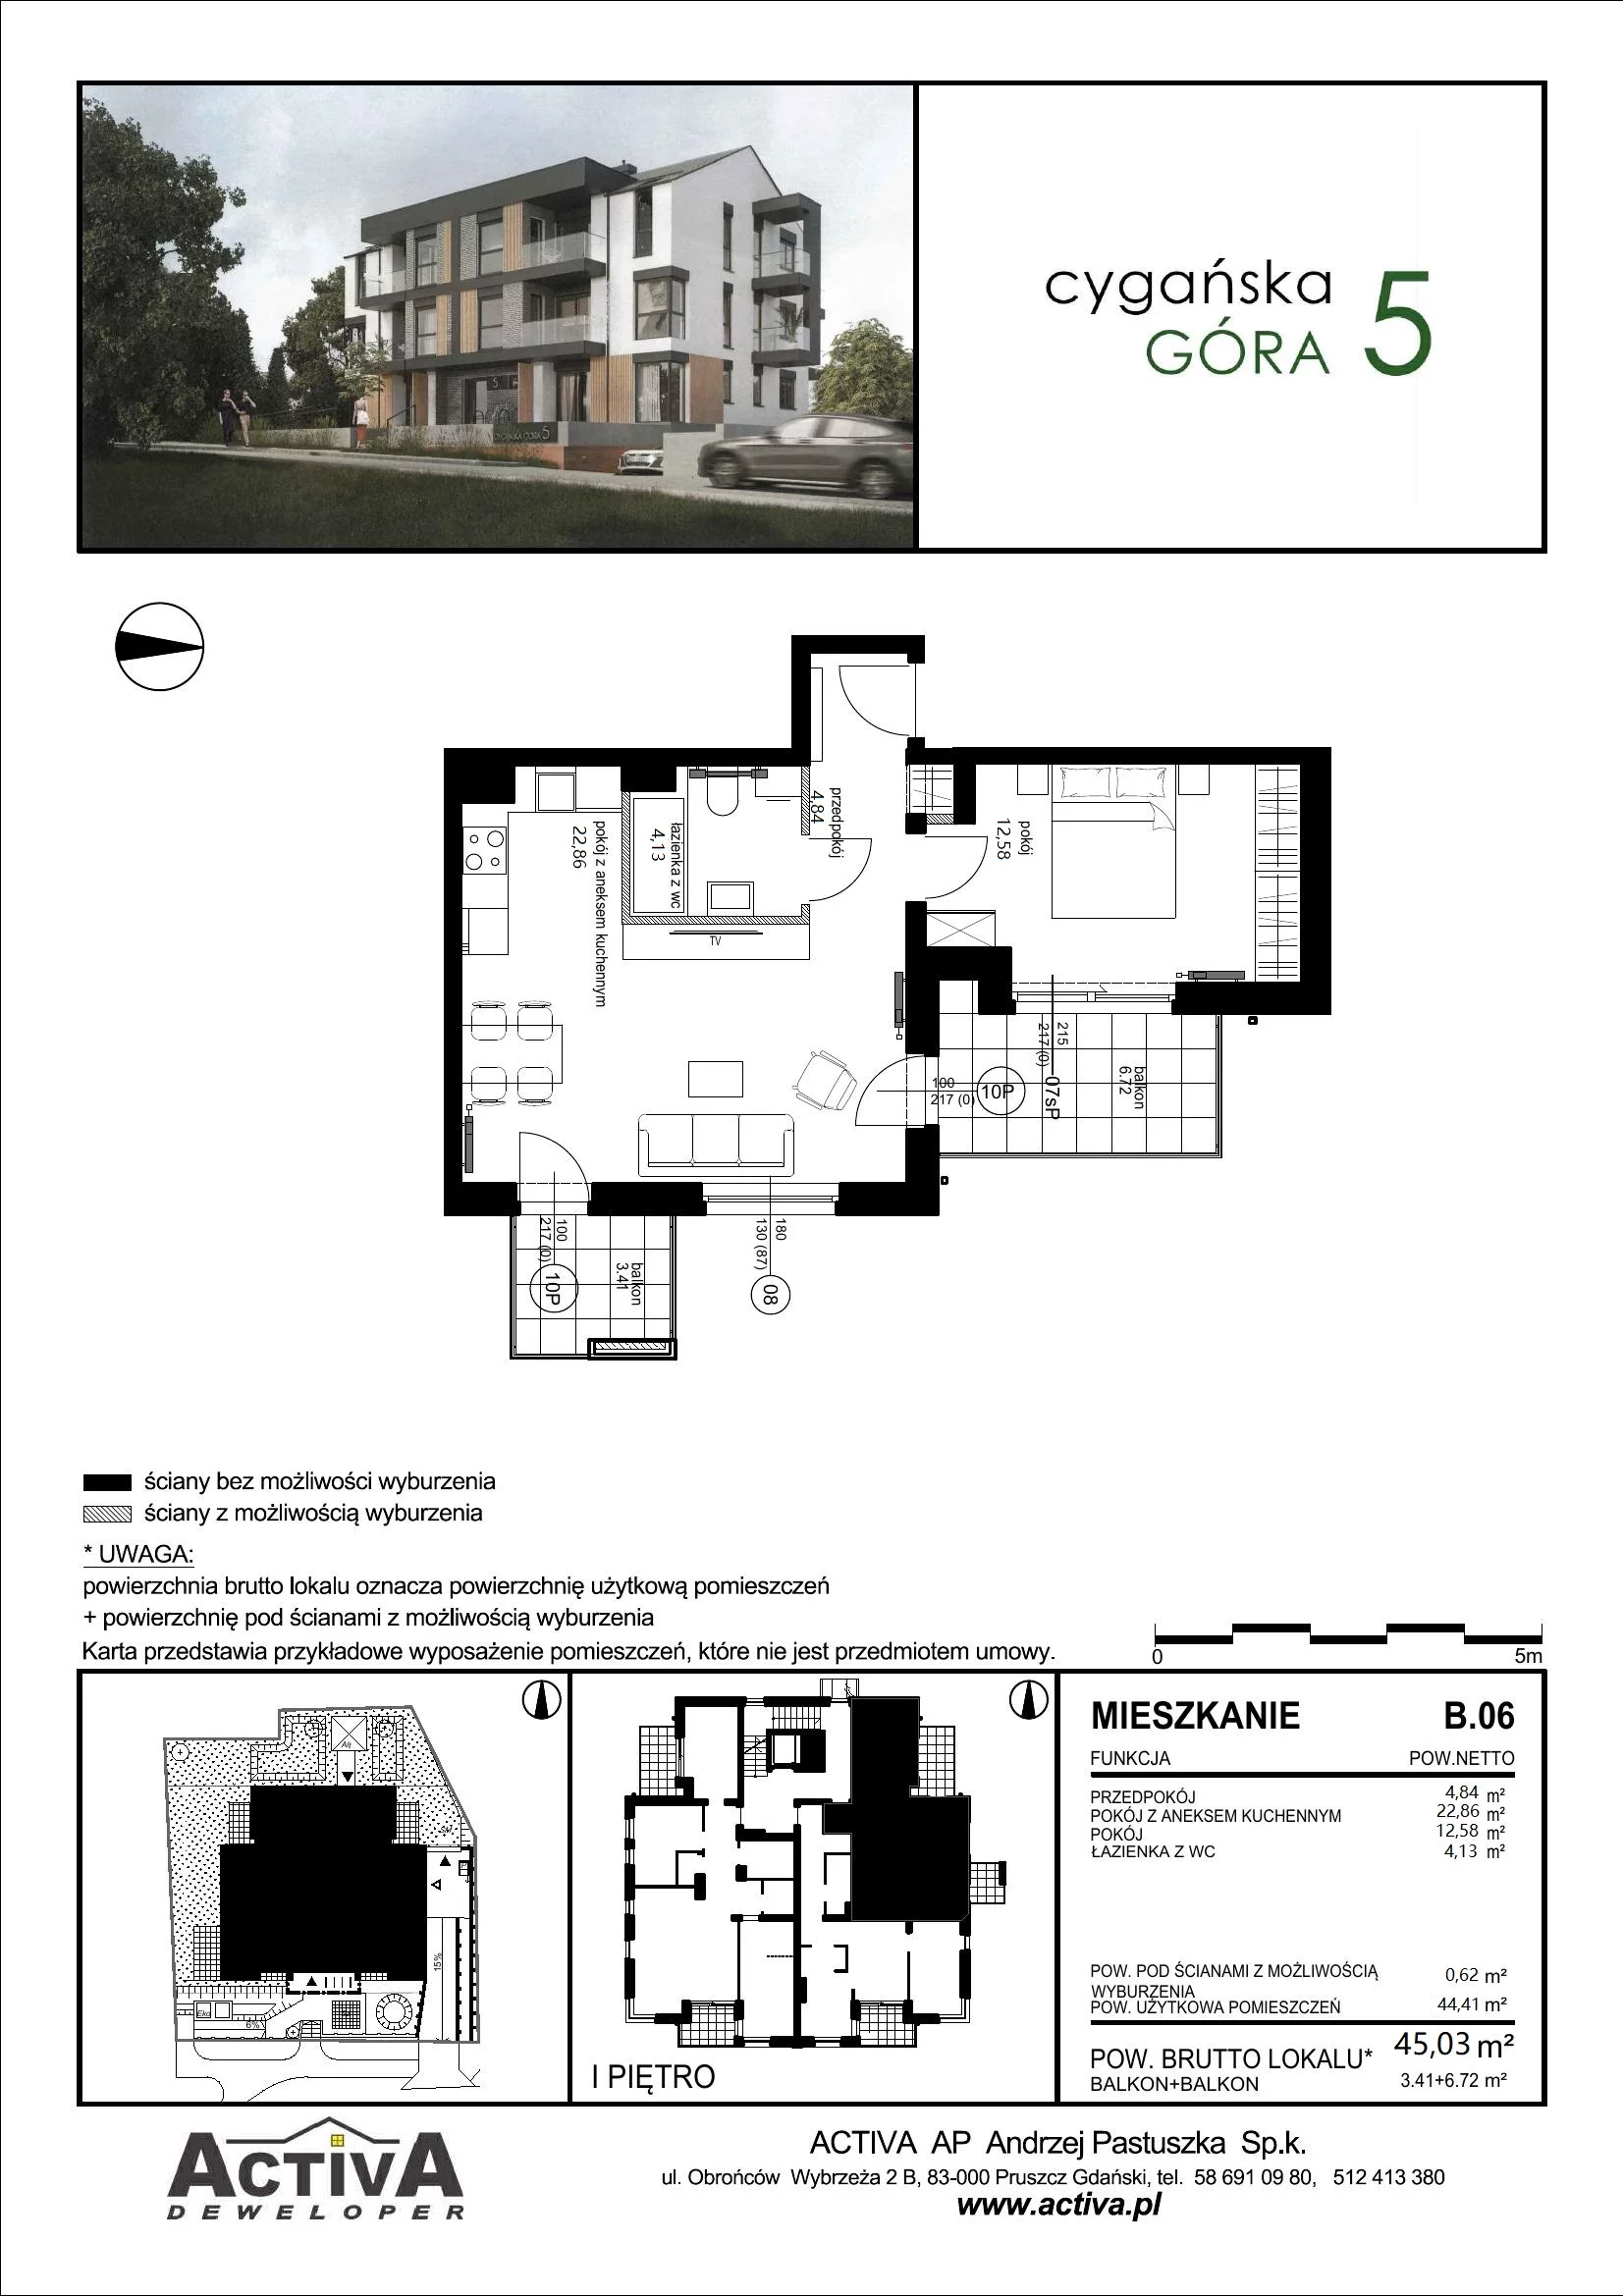 Mieszkanie 45,03 m², piętro 1, oferta nr B.06, Cygańska Góra 5, Gdańsk, Suchanino, ul. Cygańska Góra 5